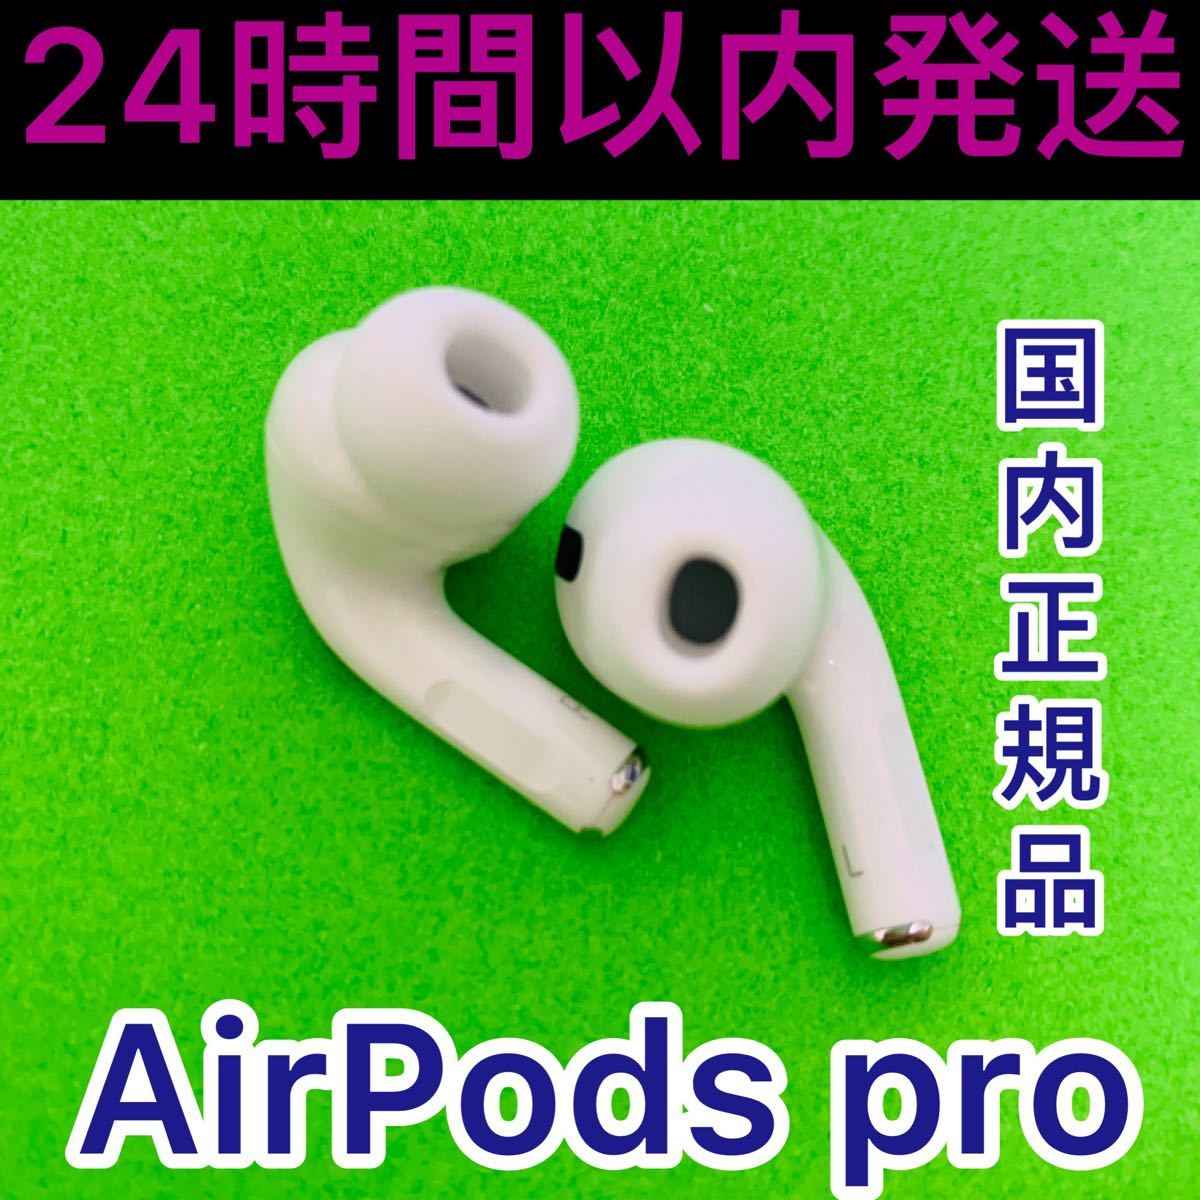 至上 AirPods Pro イヤホン 両耳 のみ econet.bi